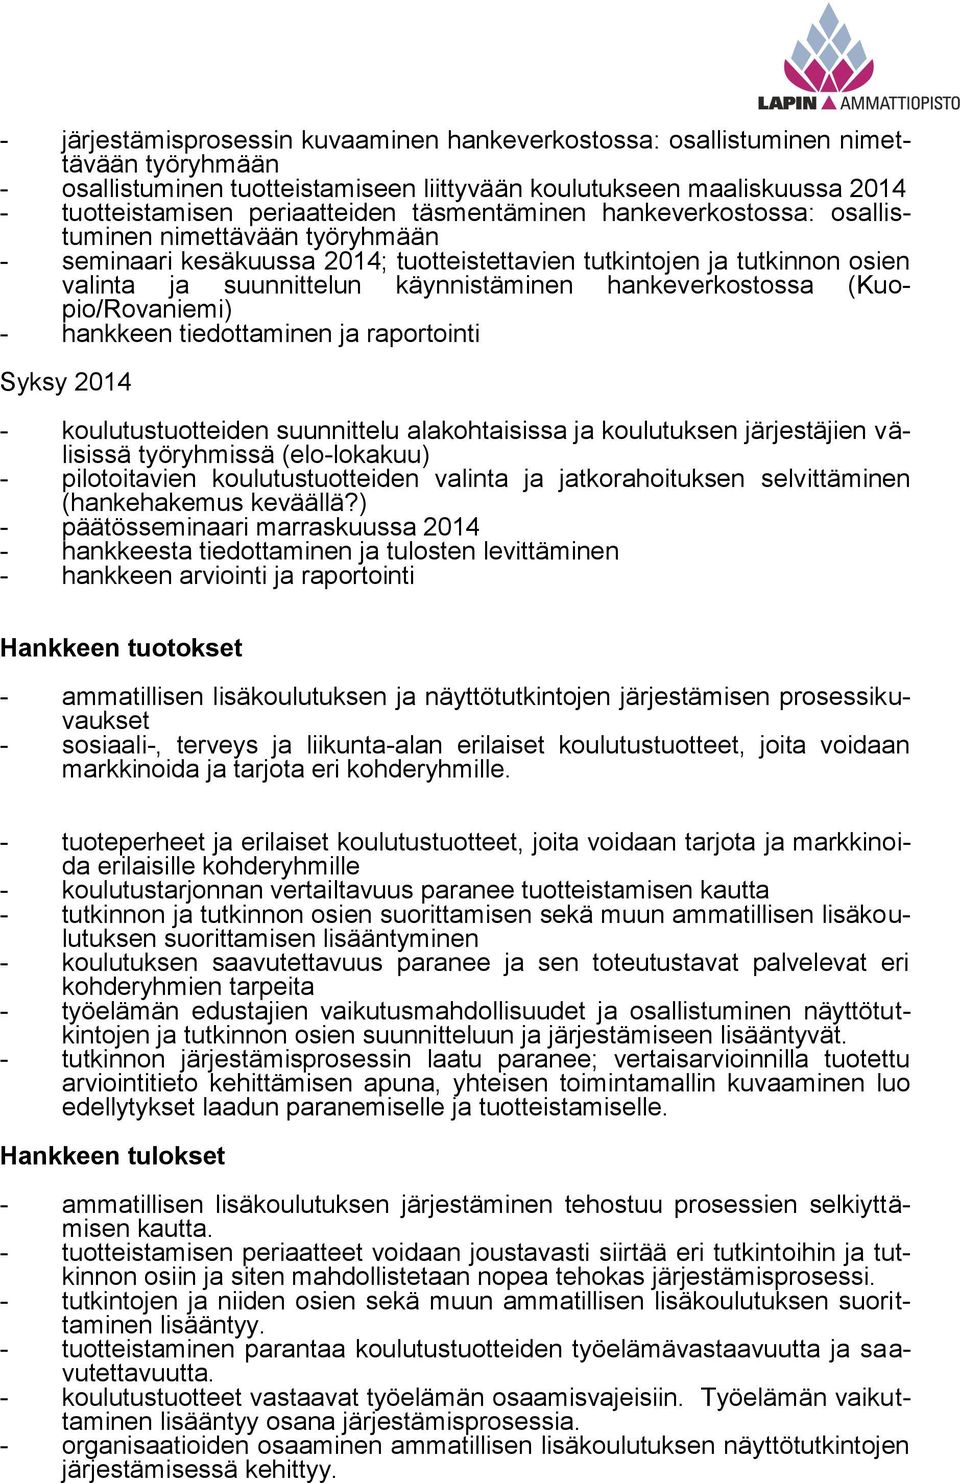 hankeverkostossa (Kuopio/Rovaniemi) - hankkeen tiedottaminen ja raportointi Syksy 2014 - tustuotteiden suunnittelu alakohtaisissa ja tuksen järjestäjien välisissä työryhmissä (elo-lokakuu) -